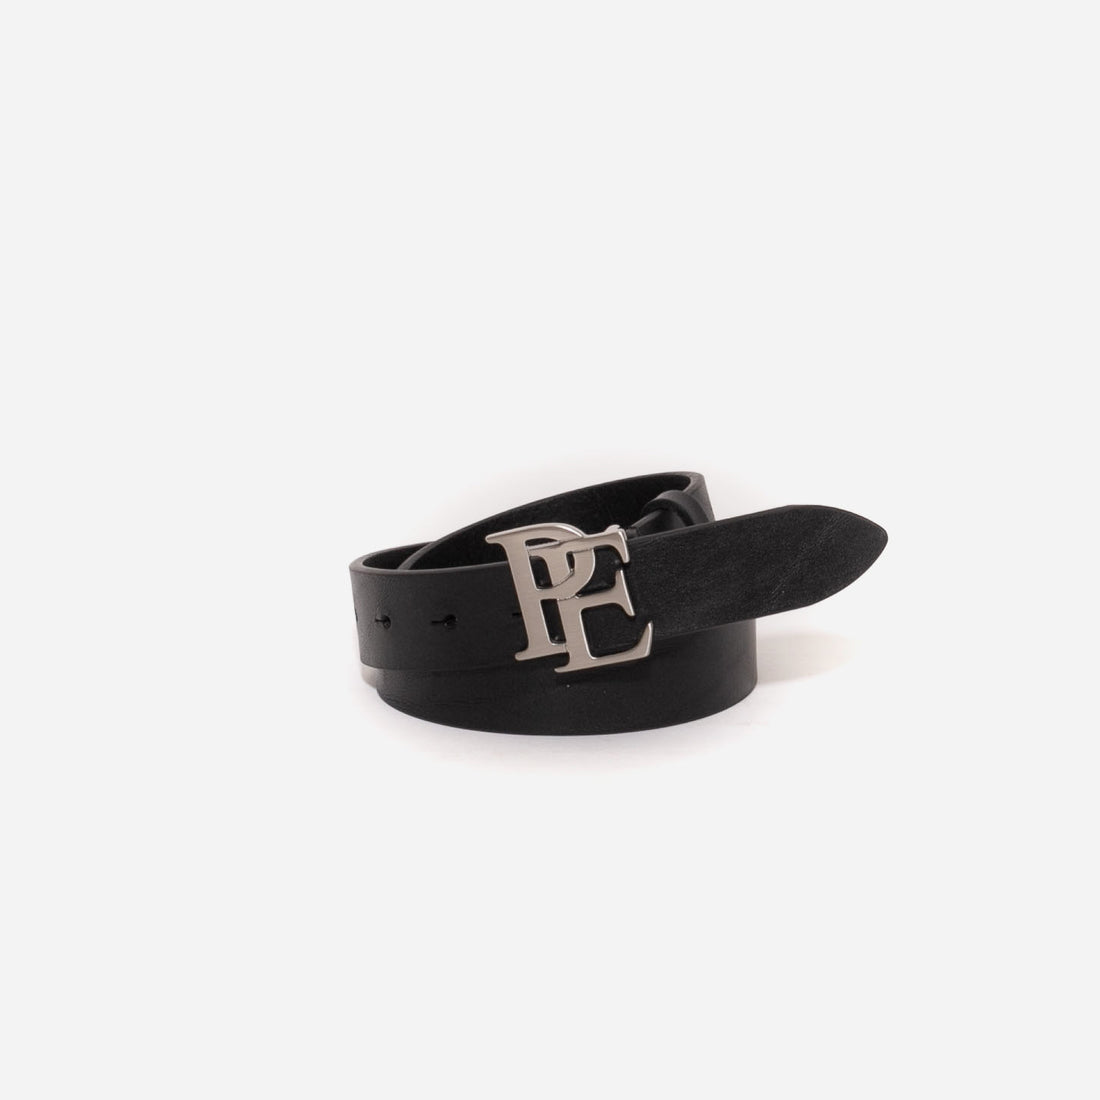 Stylized PE logo buckle belt - Black